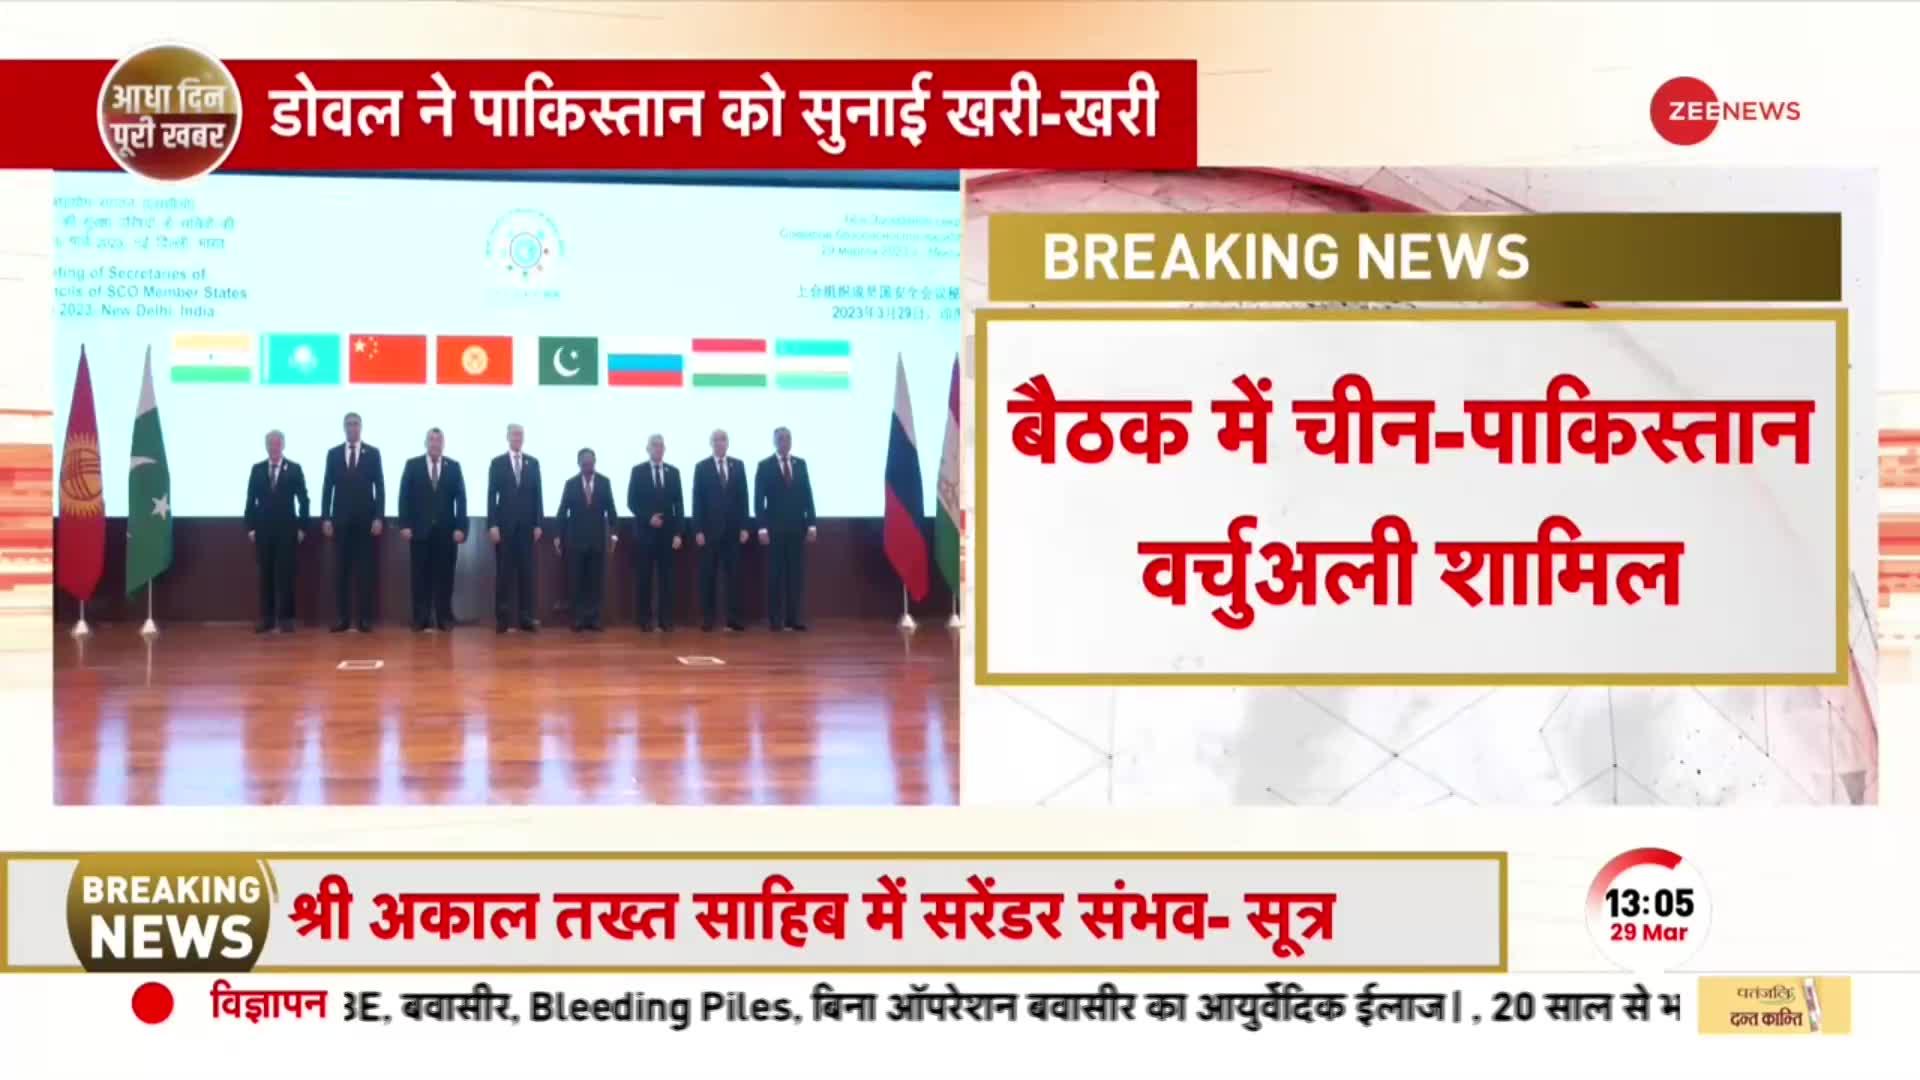 Breaking: Delhi में SCO देशों के NSA की बैठक, मीटिंग में चीन-पाकिस्तान भी वर्जुअली शामिल